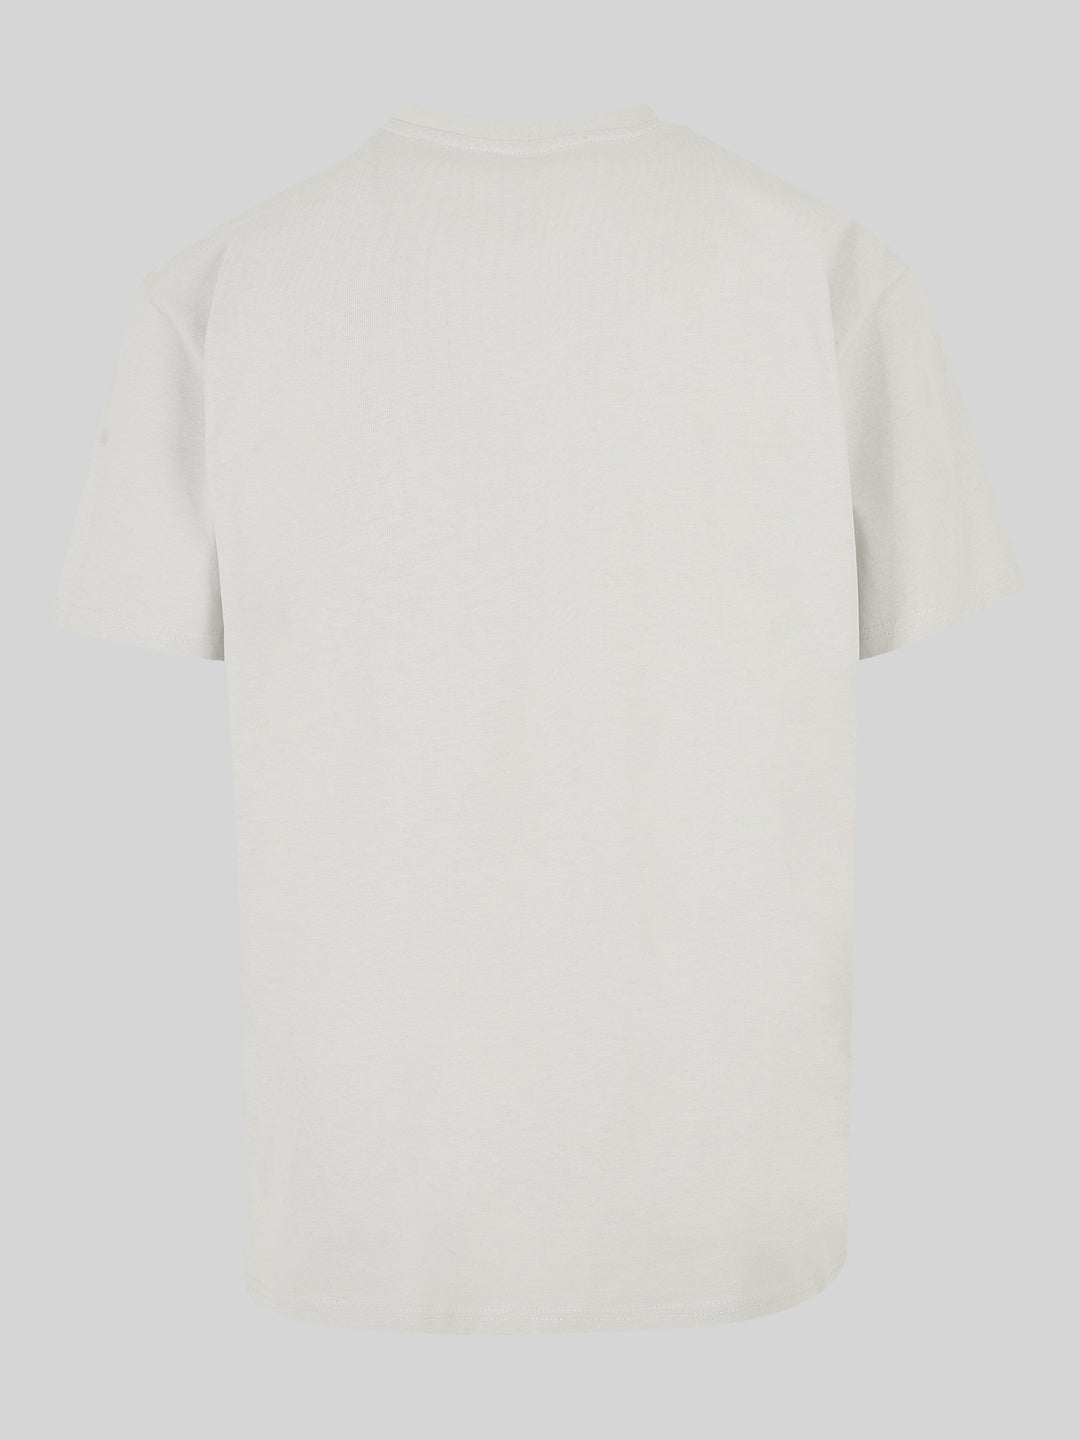 KNUT | Oversize T-Shirt Herren Go Sylt